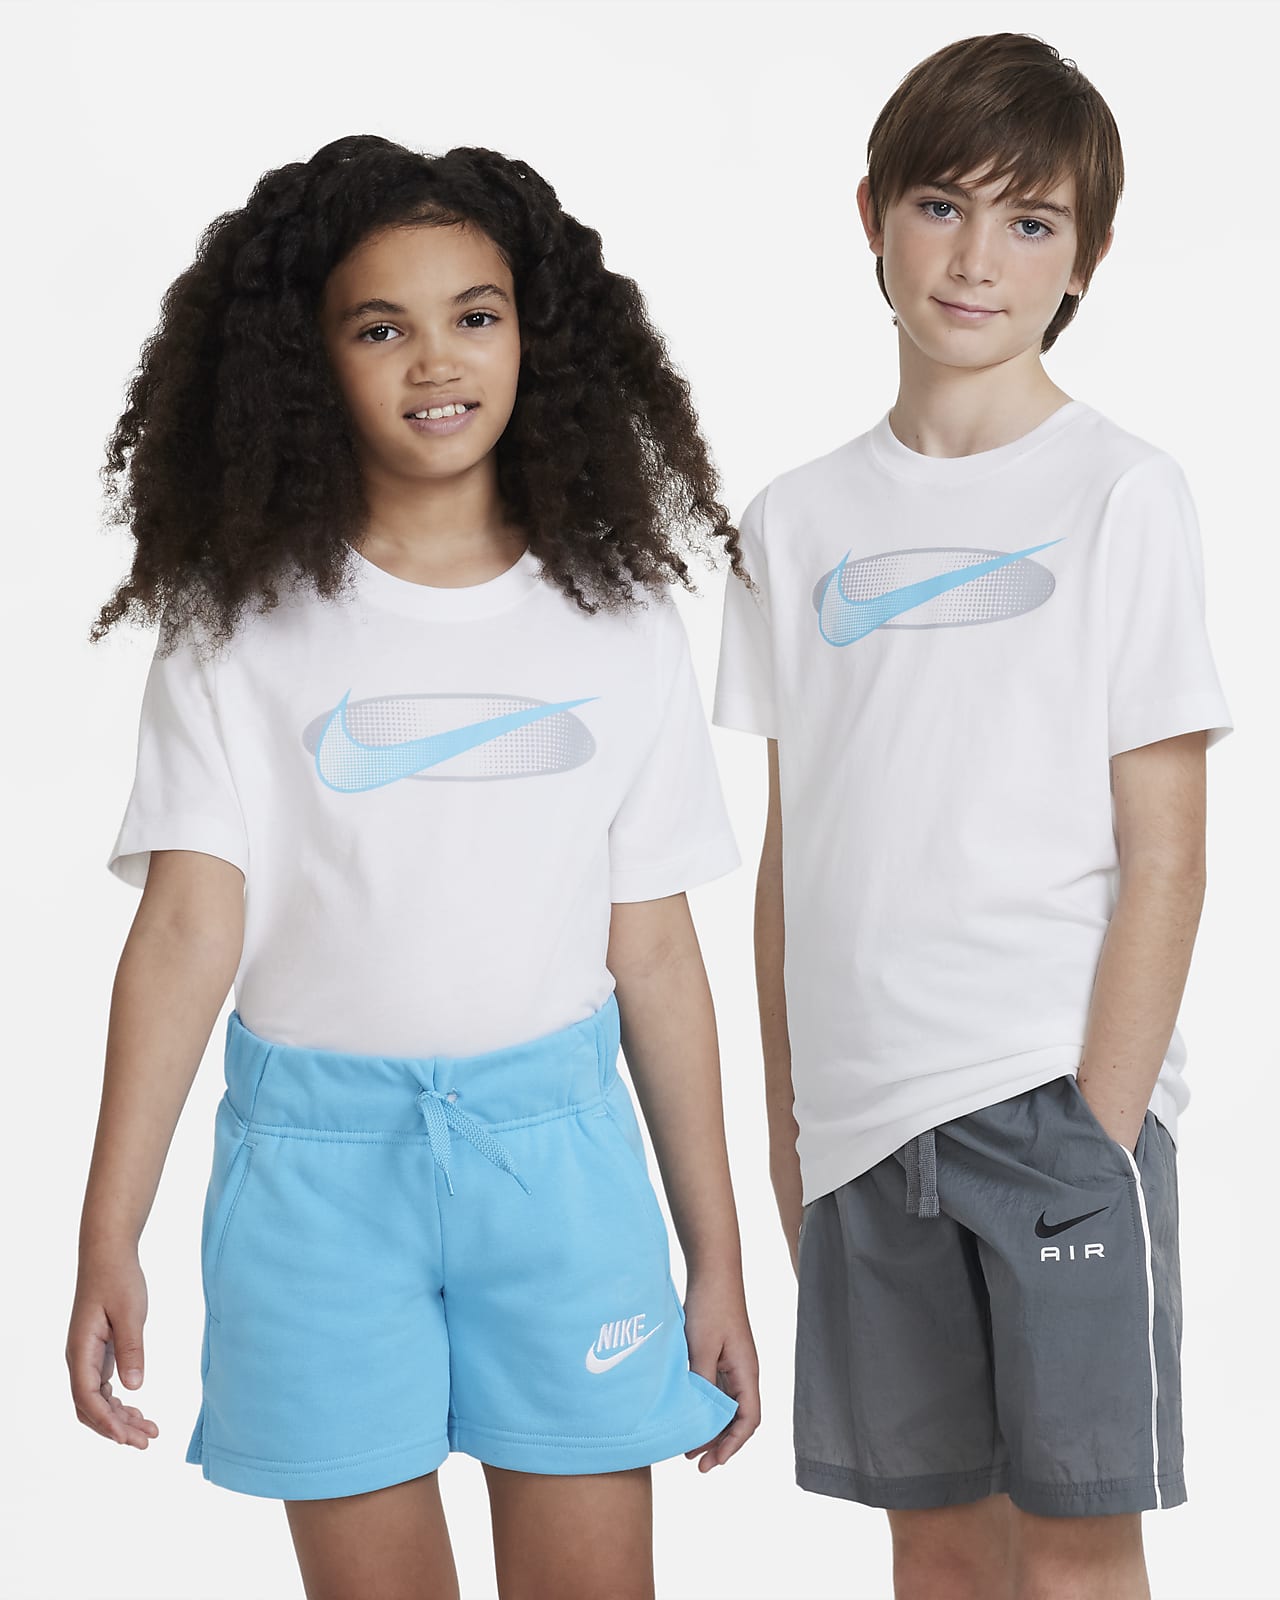 T-shirt Nike Sportswear Rouge Clair pour Enfant – AR5254-618